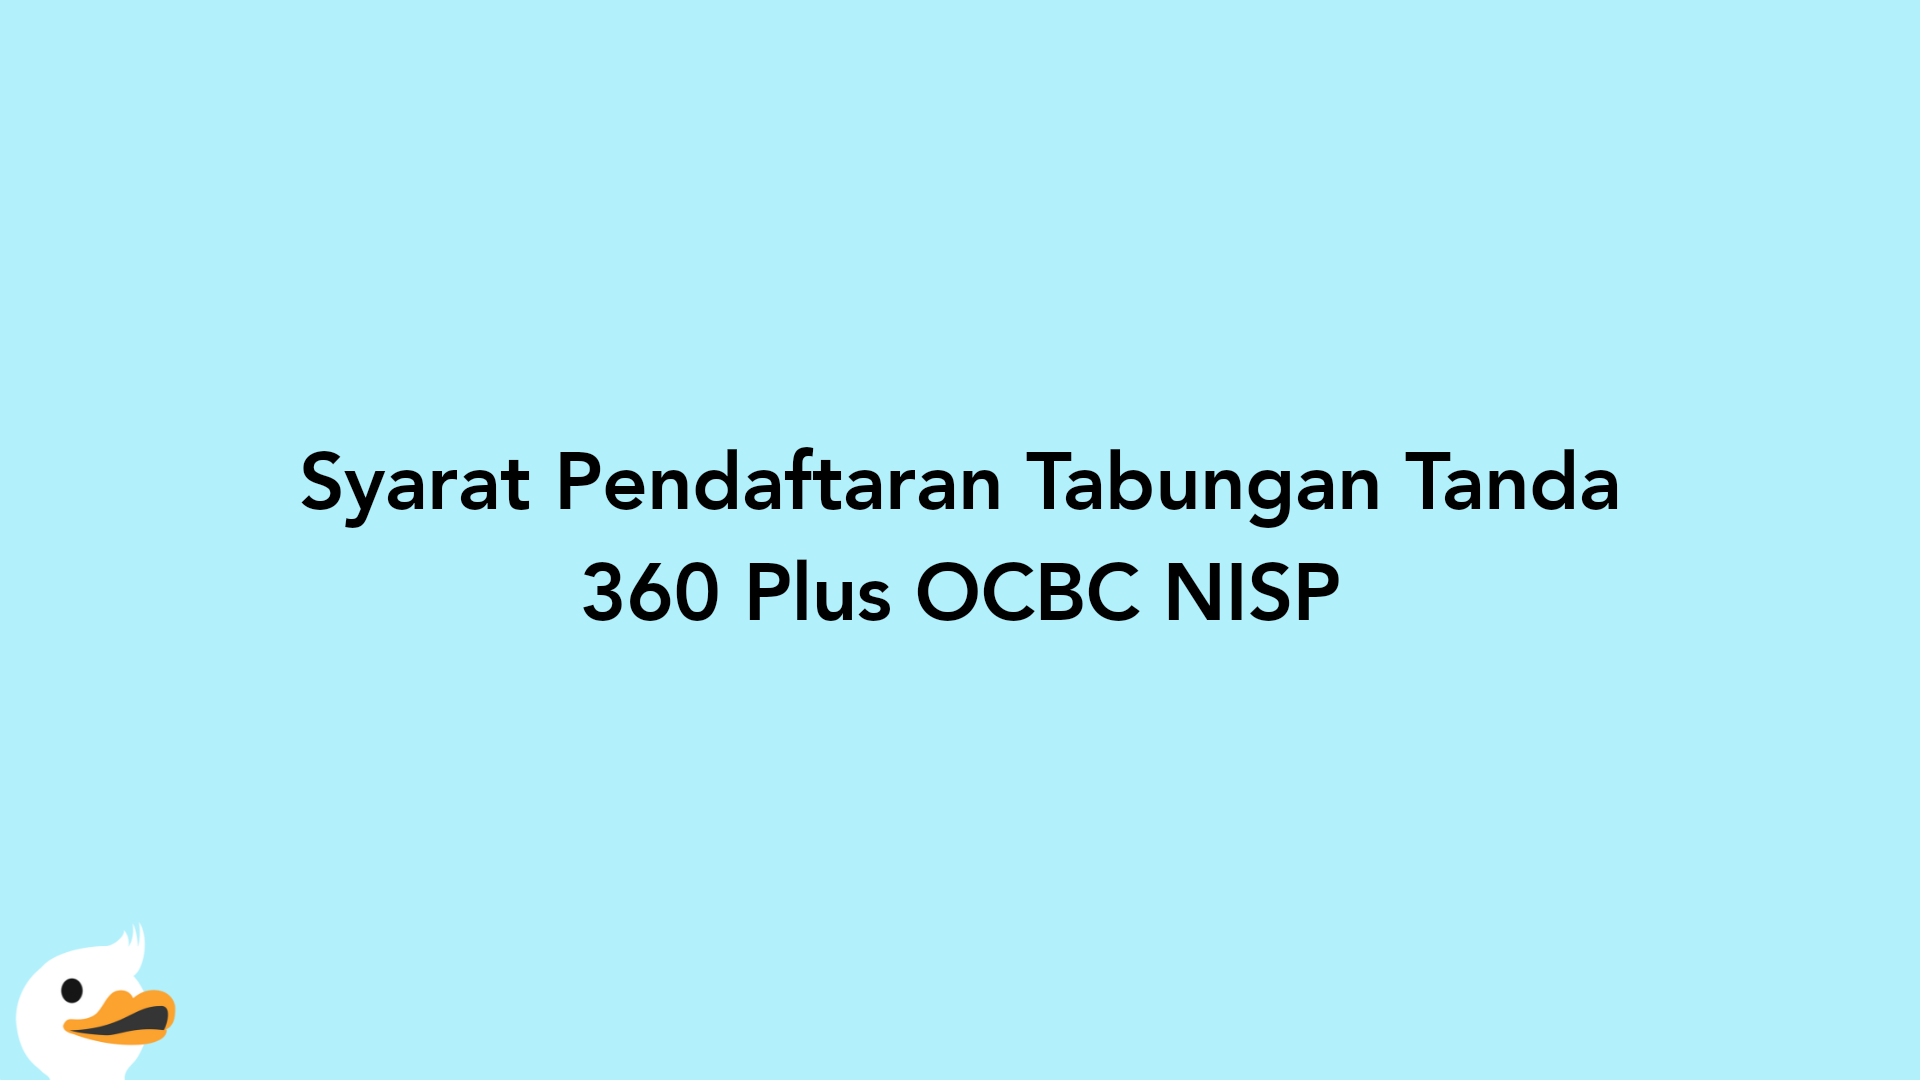 Syarat Pendaftaran Tabungan Tanda 360 Plus OCBC NISP